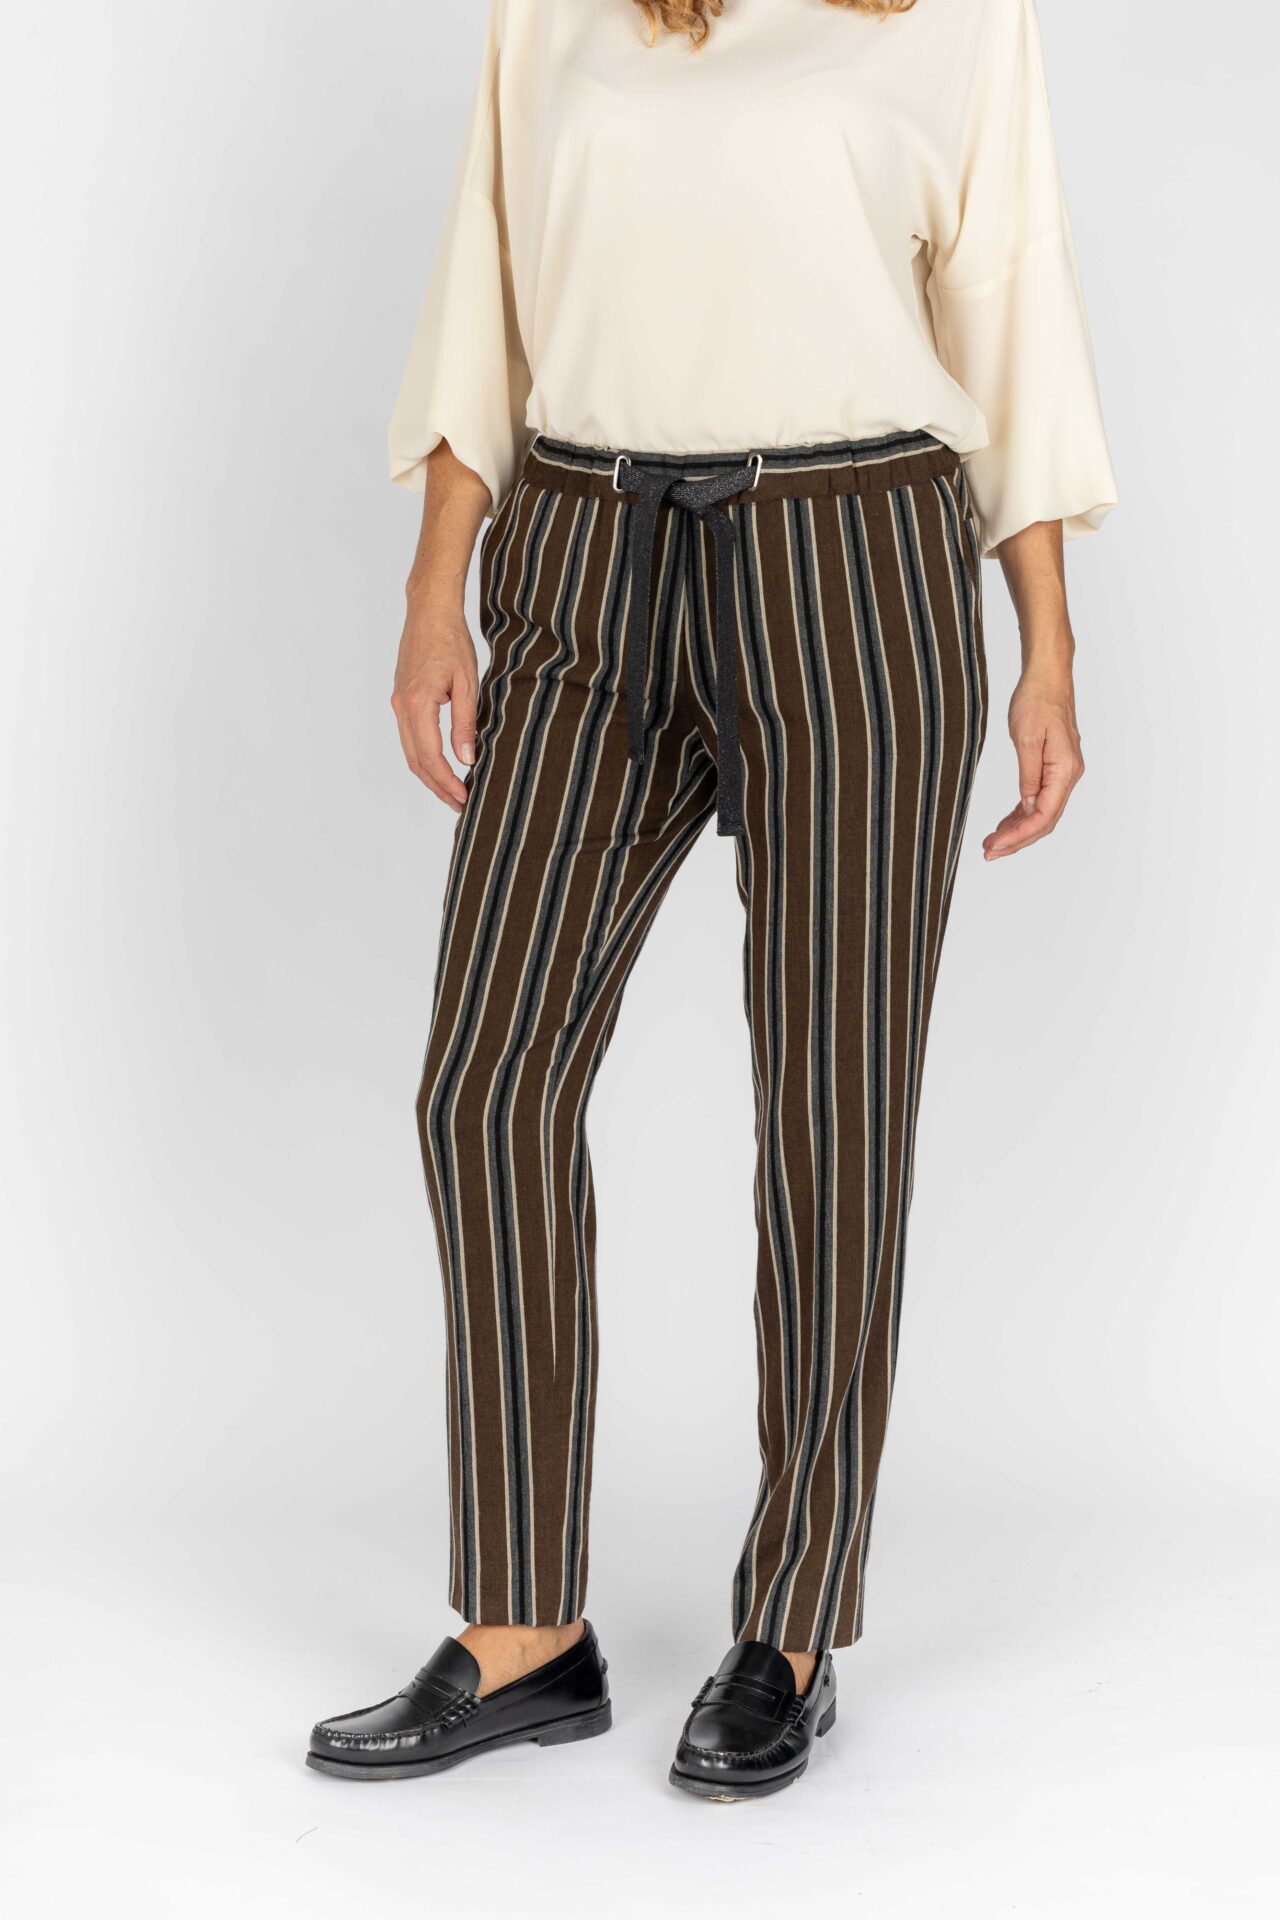 Pantaloni linea morbida colore cacao-grigio da donna